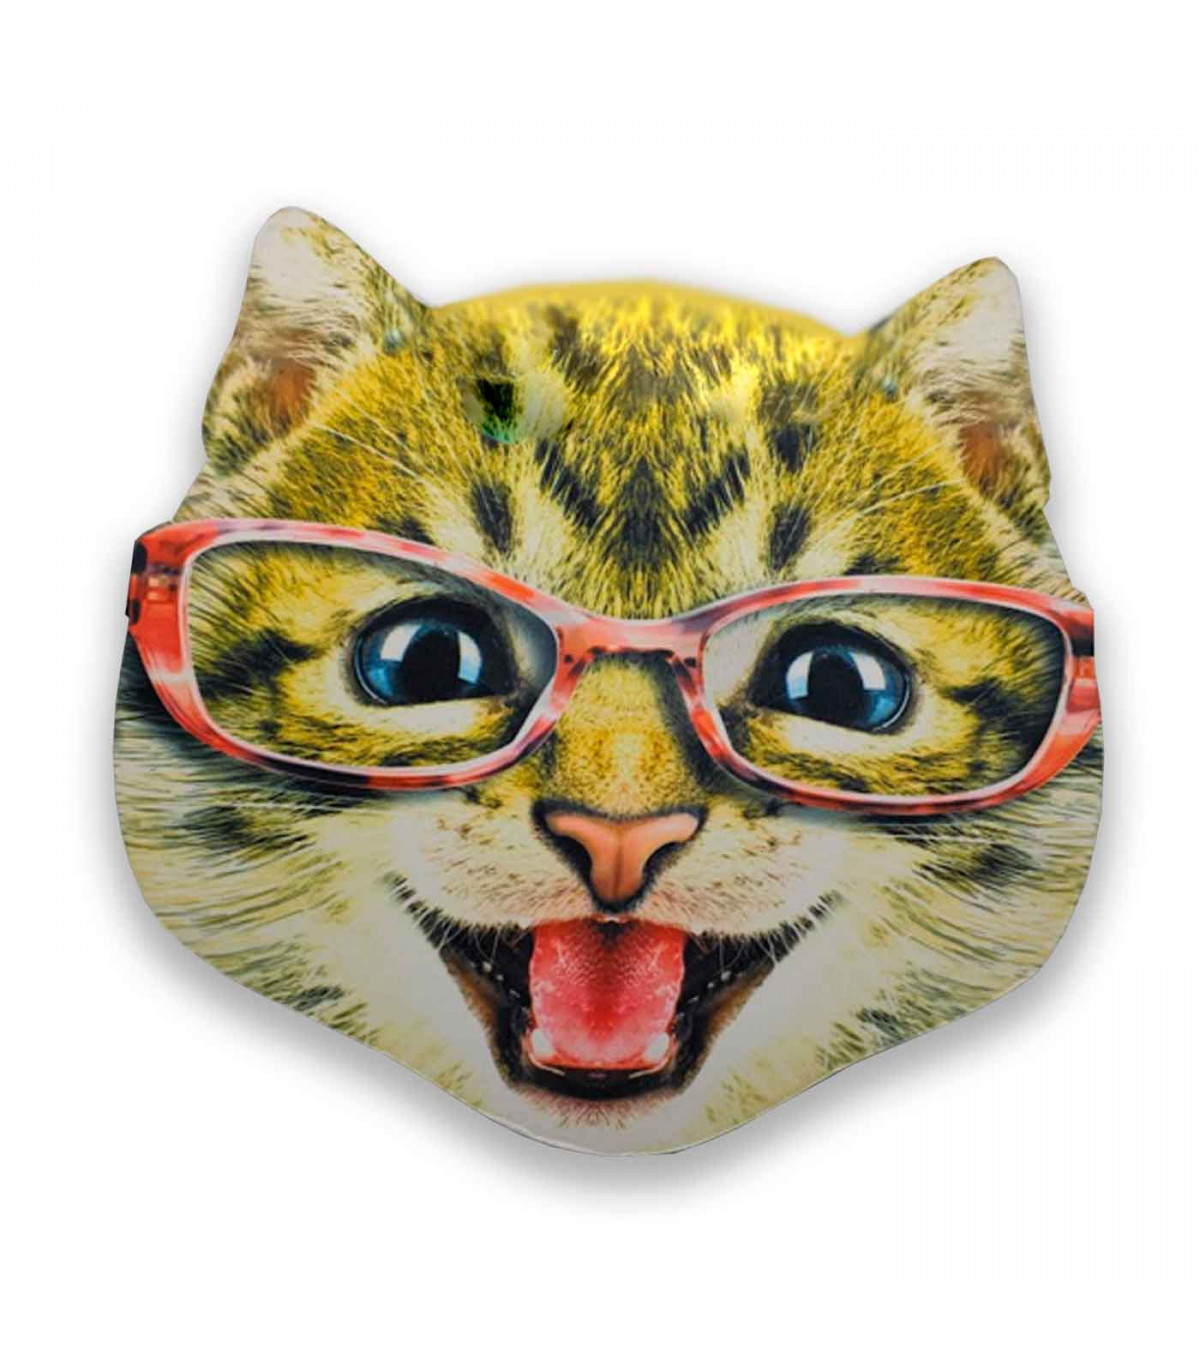 Careta de gato con gafas, foam, para niños para combinar con disfraces para  carnaval, halloween y celebraciones. Tamaño: 34 x 34